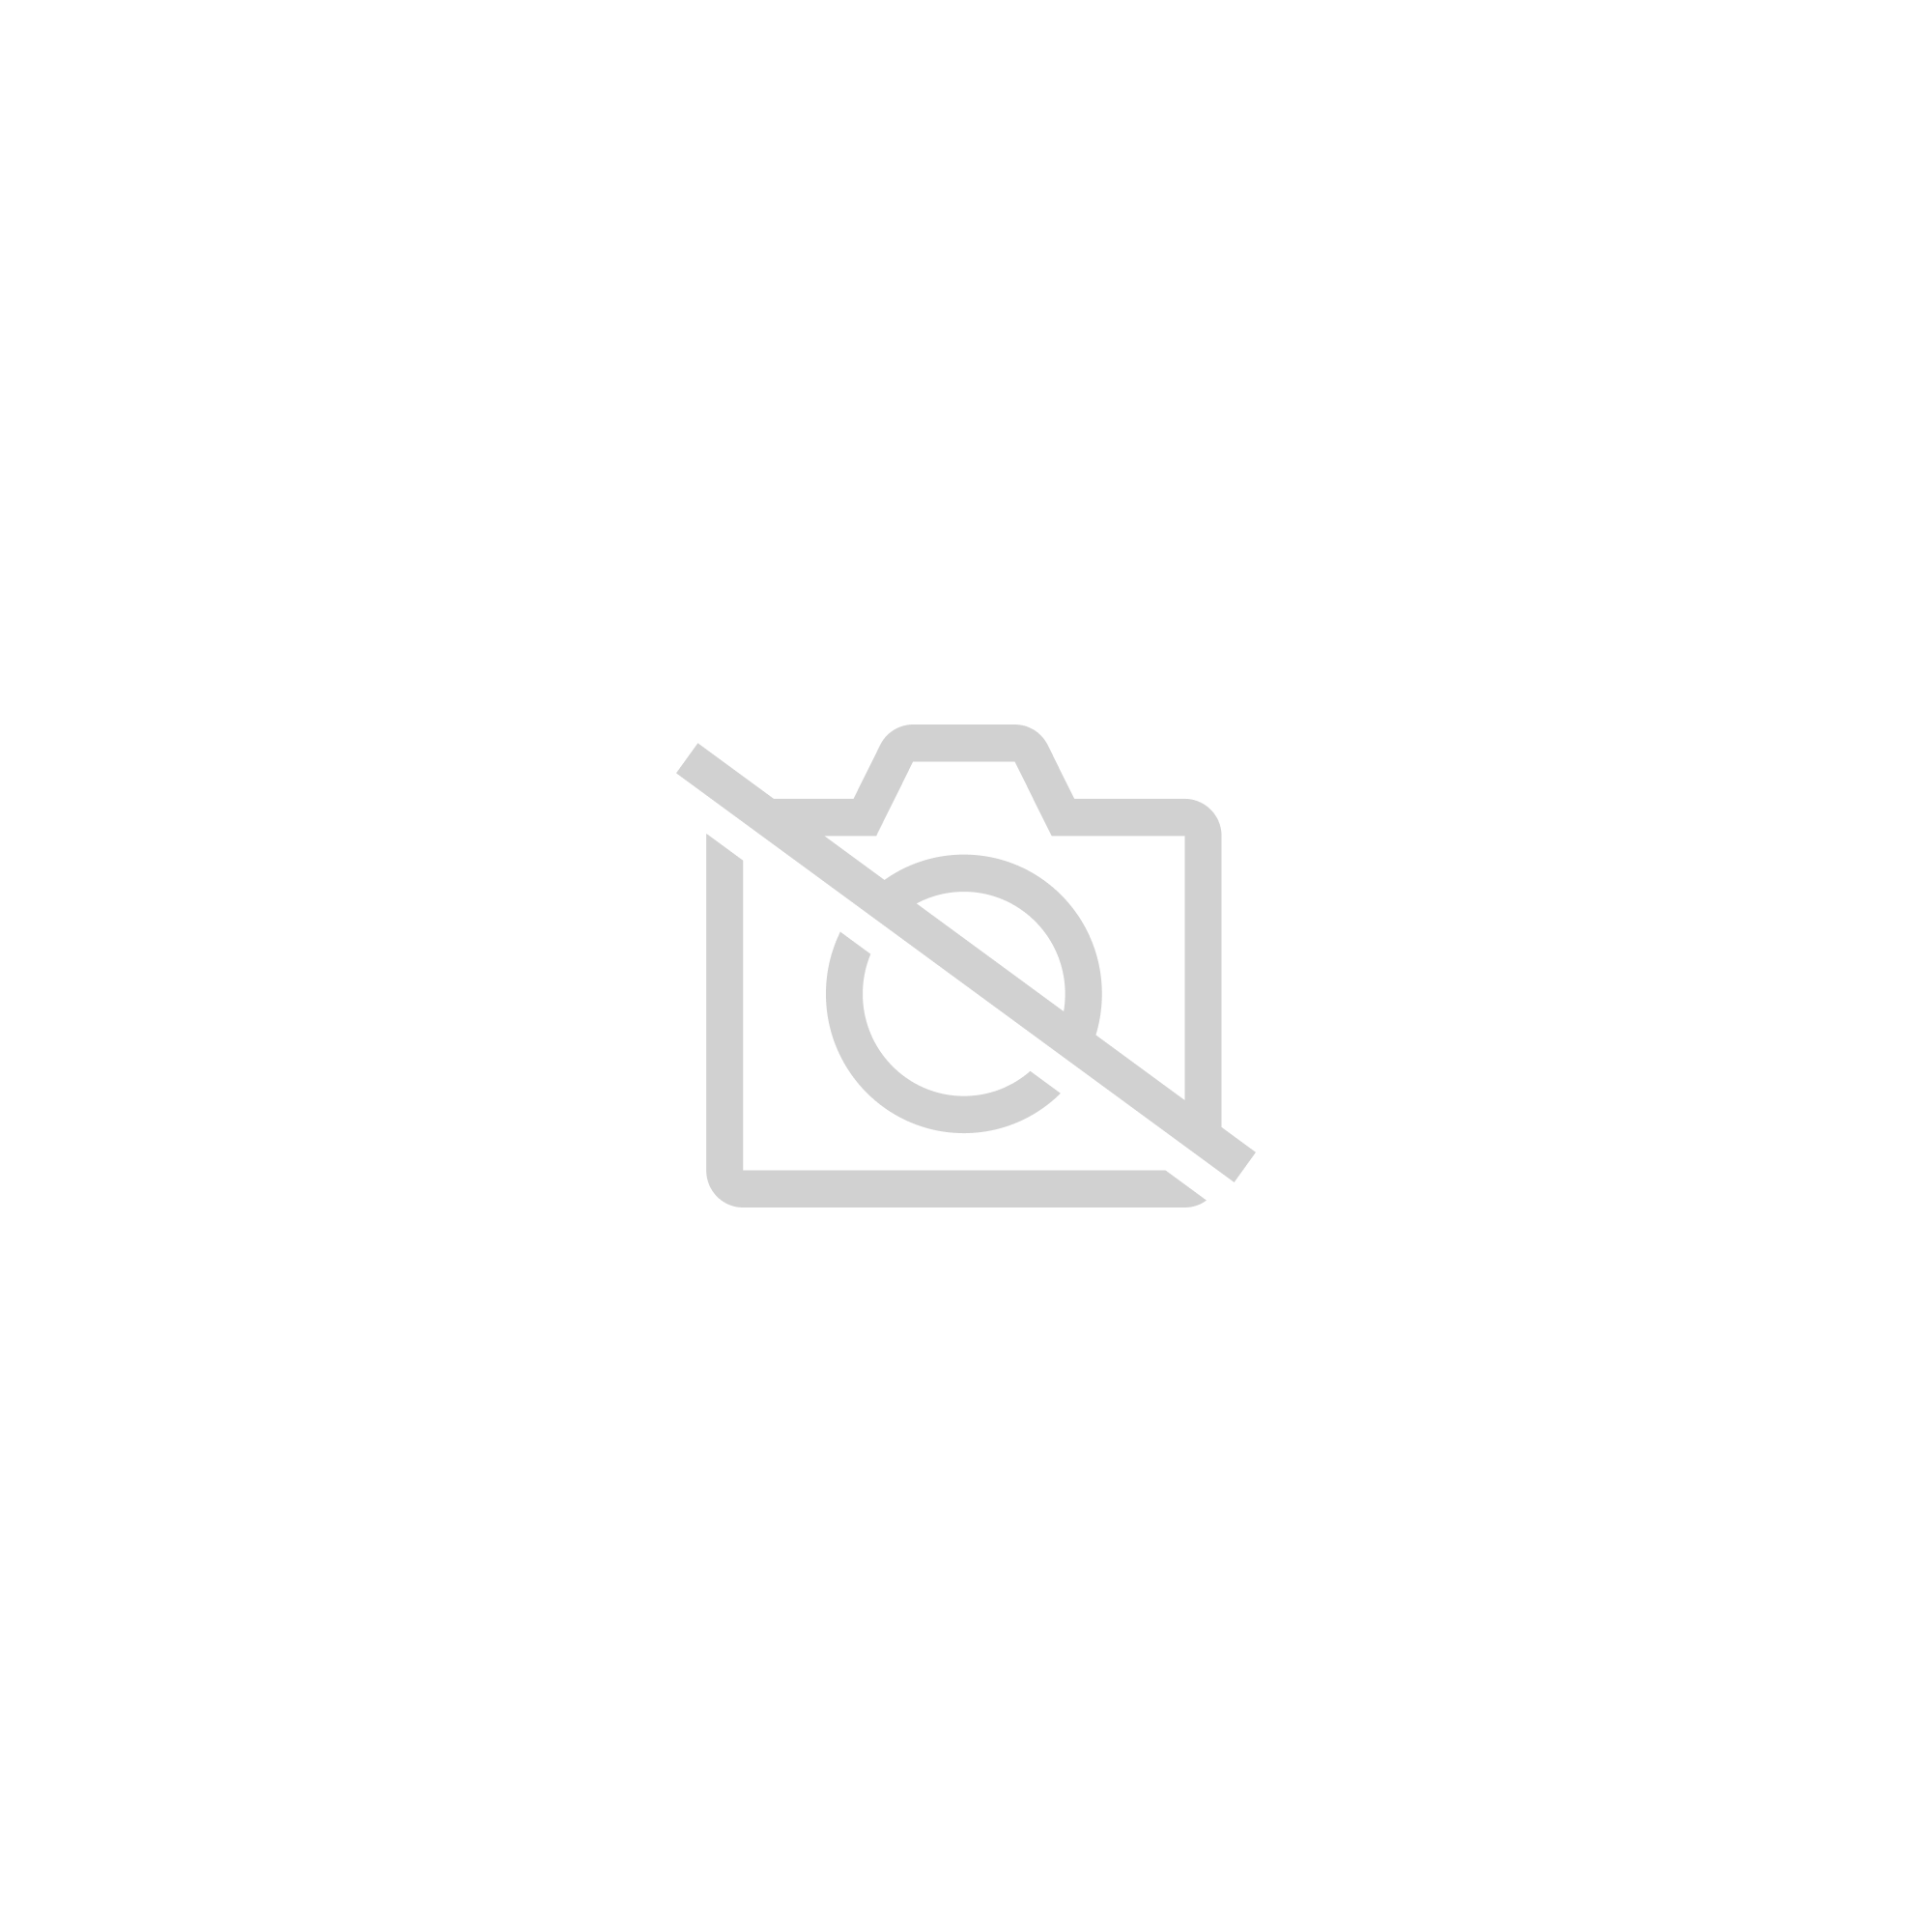 Durable Résine Longhorn Vache Crâne Tenture Murale Décor Décoration Murale Cornes Artisanats pour Chambre Salle à Manger Bureau Décoration MOOUK Bulldog Crâne Mural Sculpture 